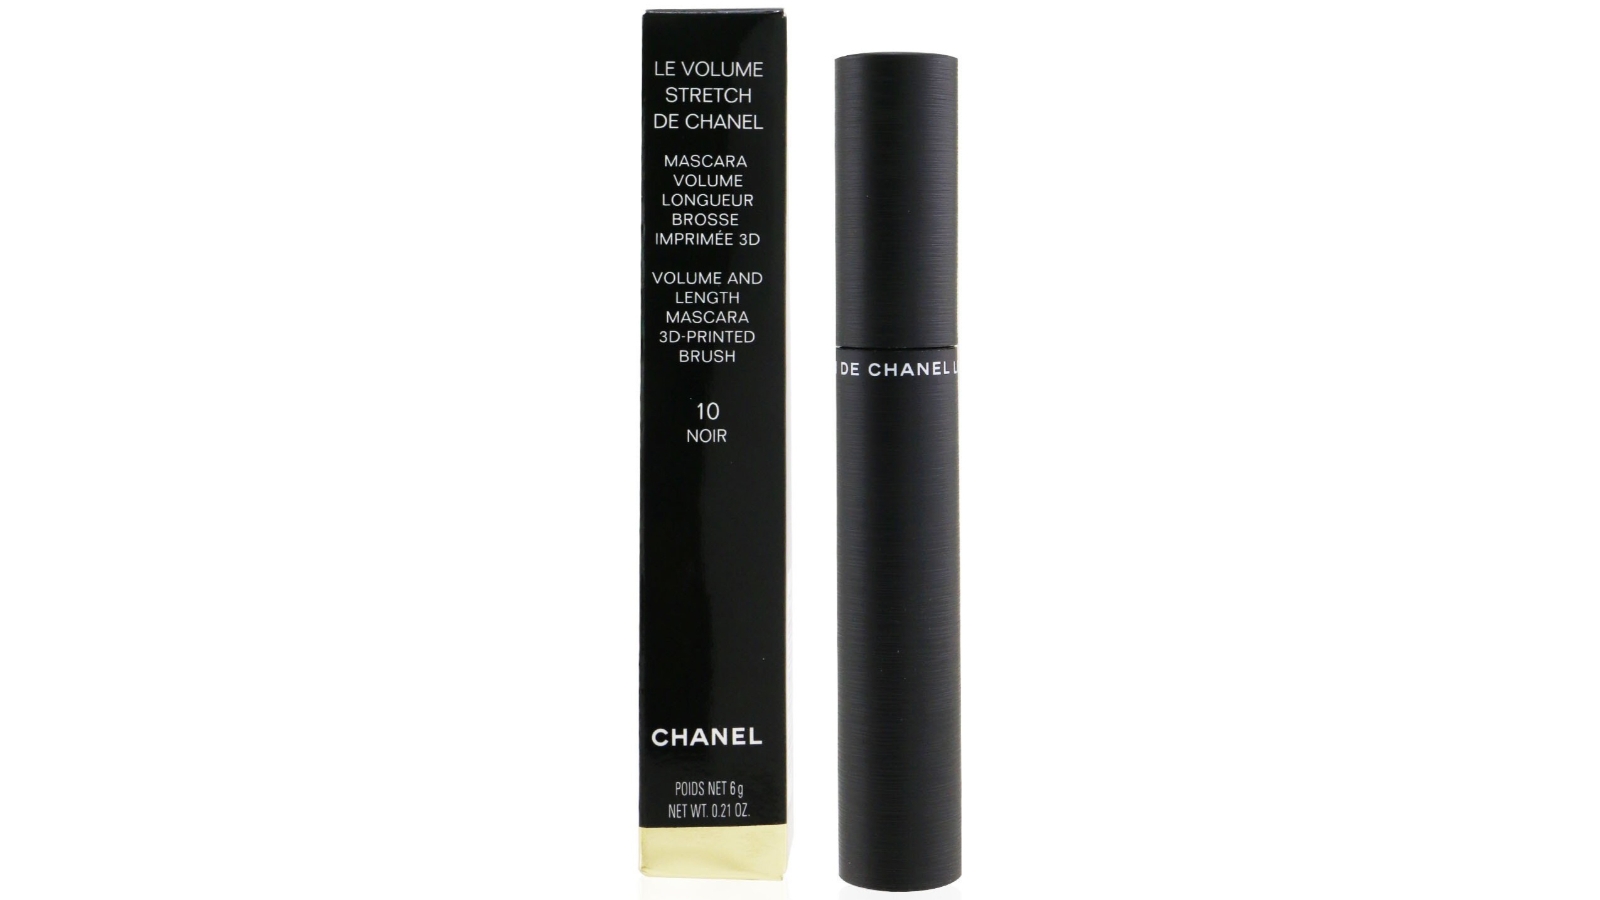 Cargo Le Volume Stretch De Chanel Mascara - No. 10 Noir - 6g/0.21